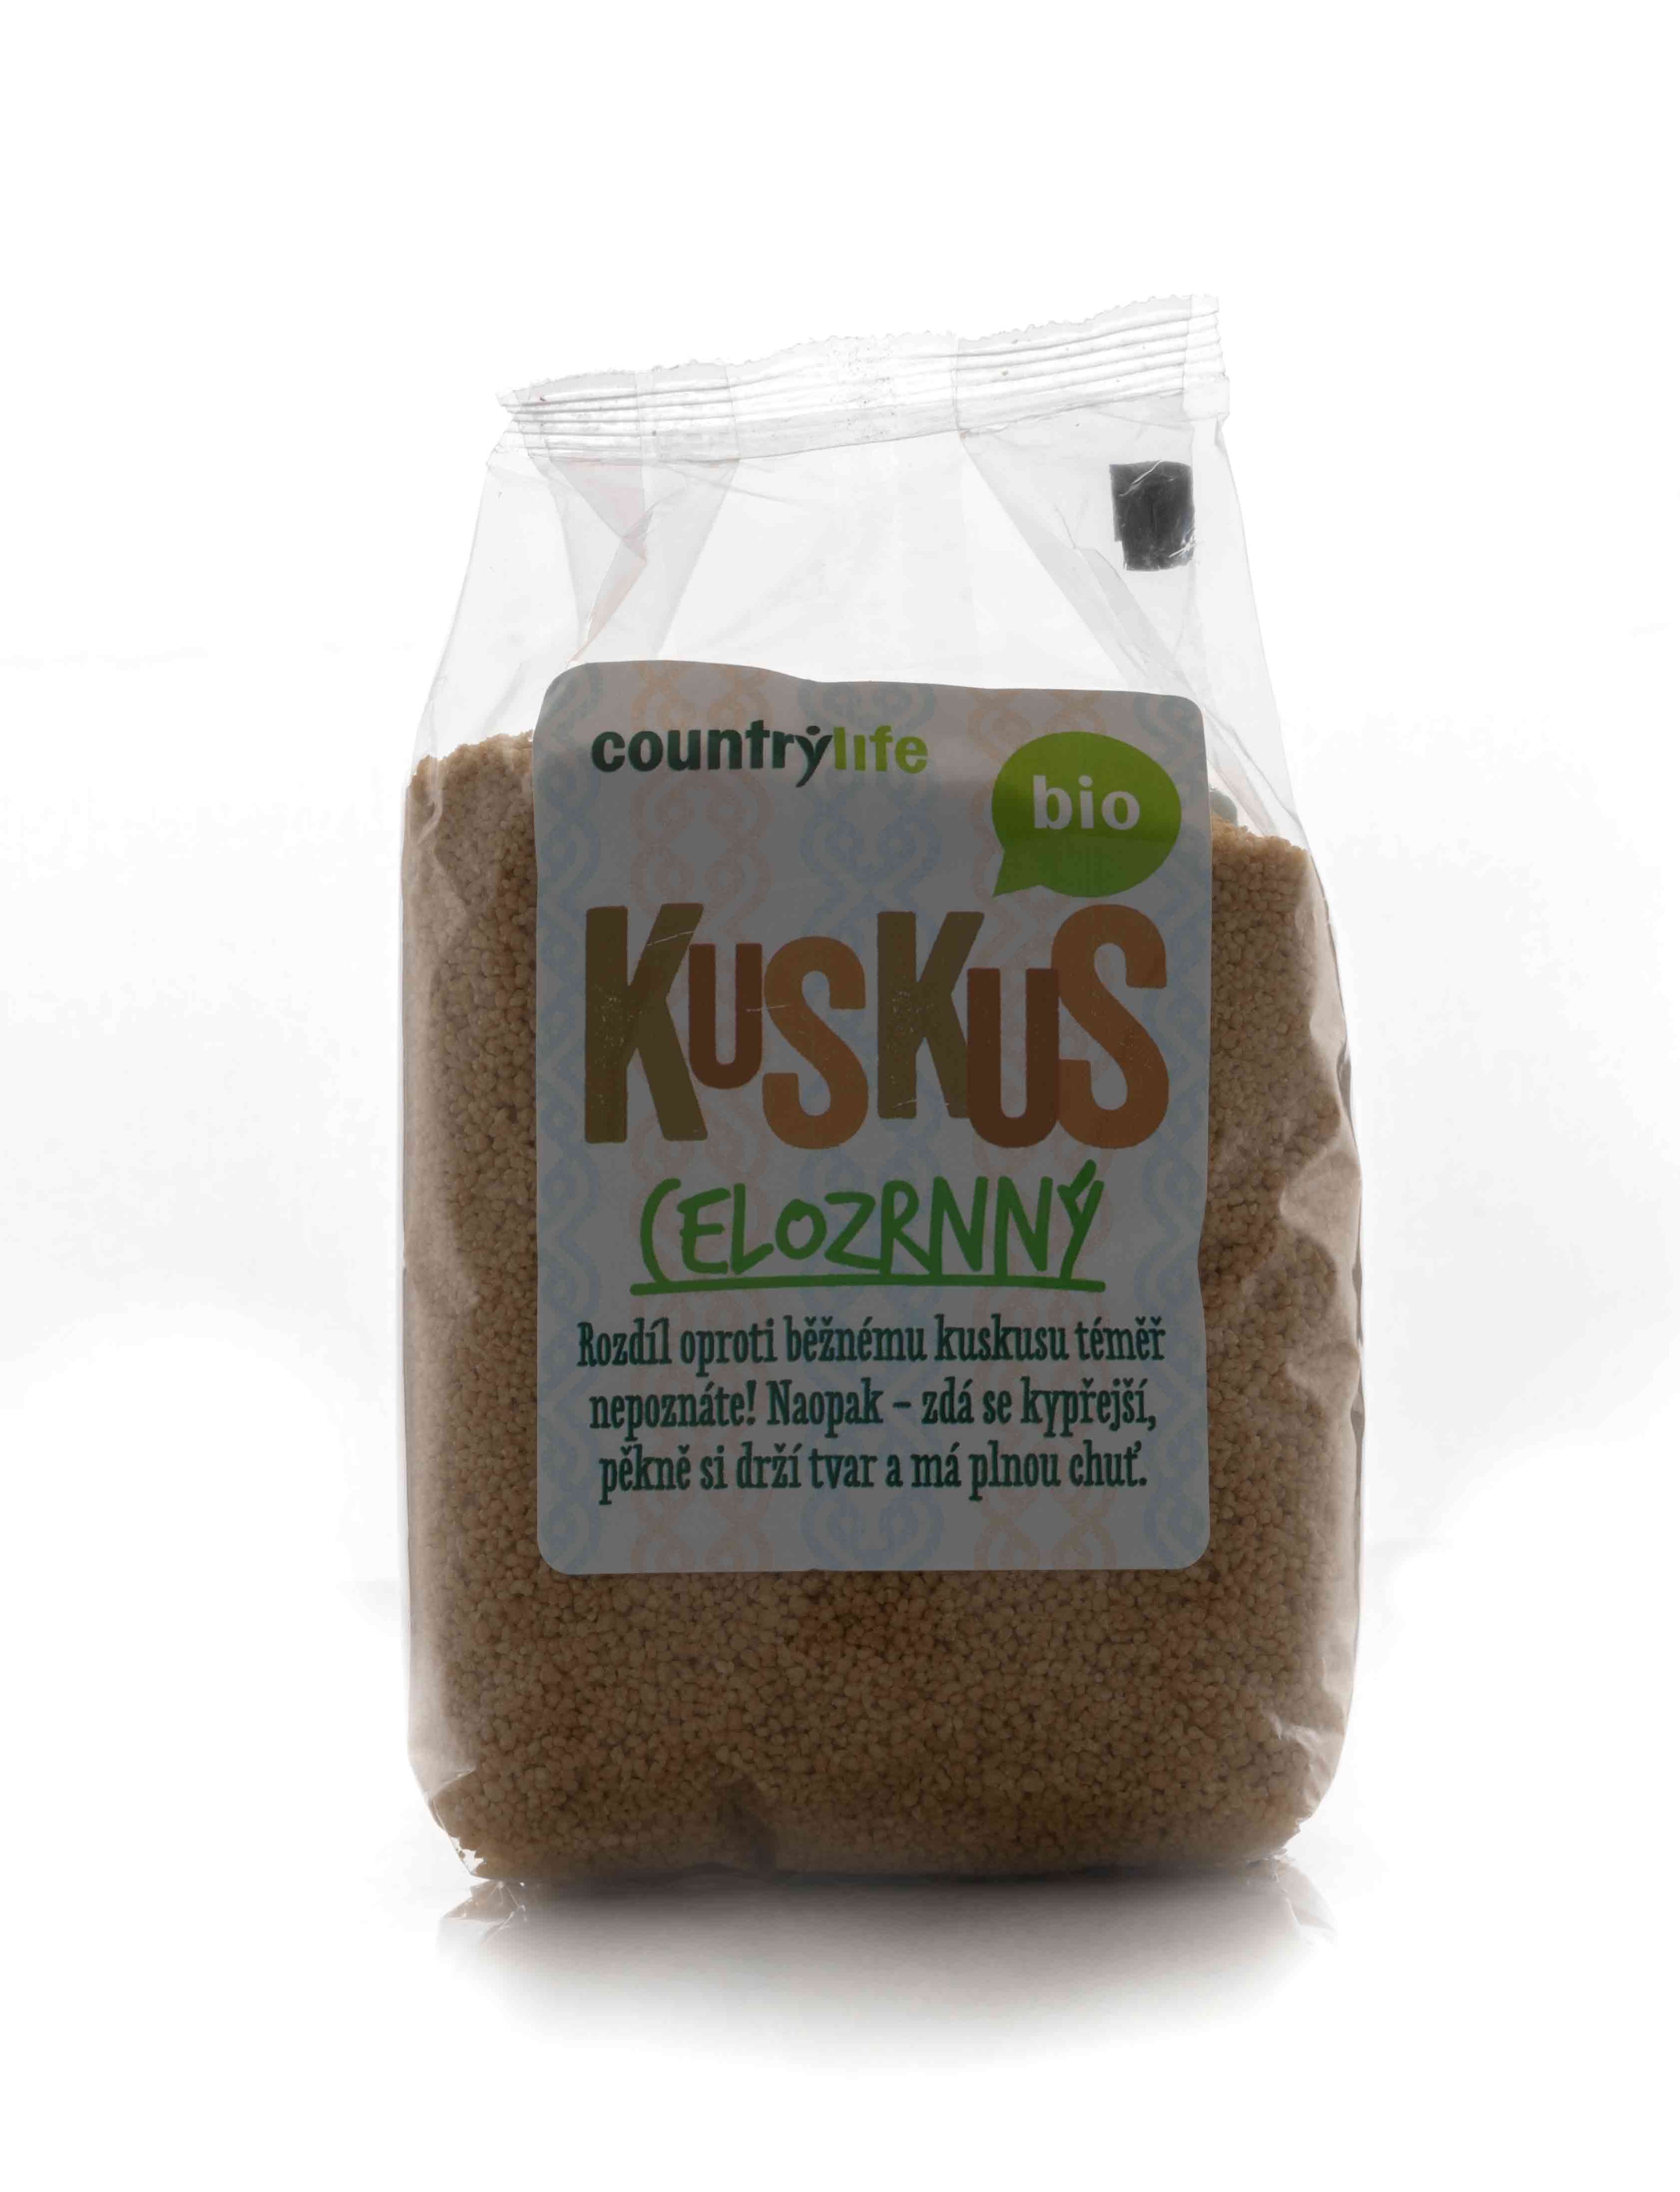 Pšeničná bielkovina z celozrnnej pšenice.  Kuskus (Couscous) je marockej ľudovej jedlo. Kuskus je tvrdozrná pšenica spracovaná do drobných...